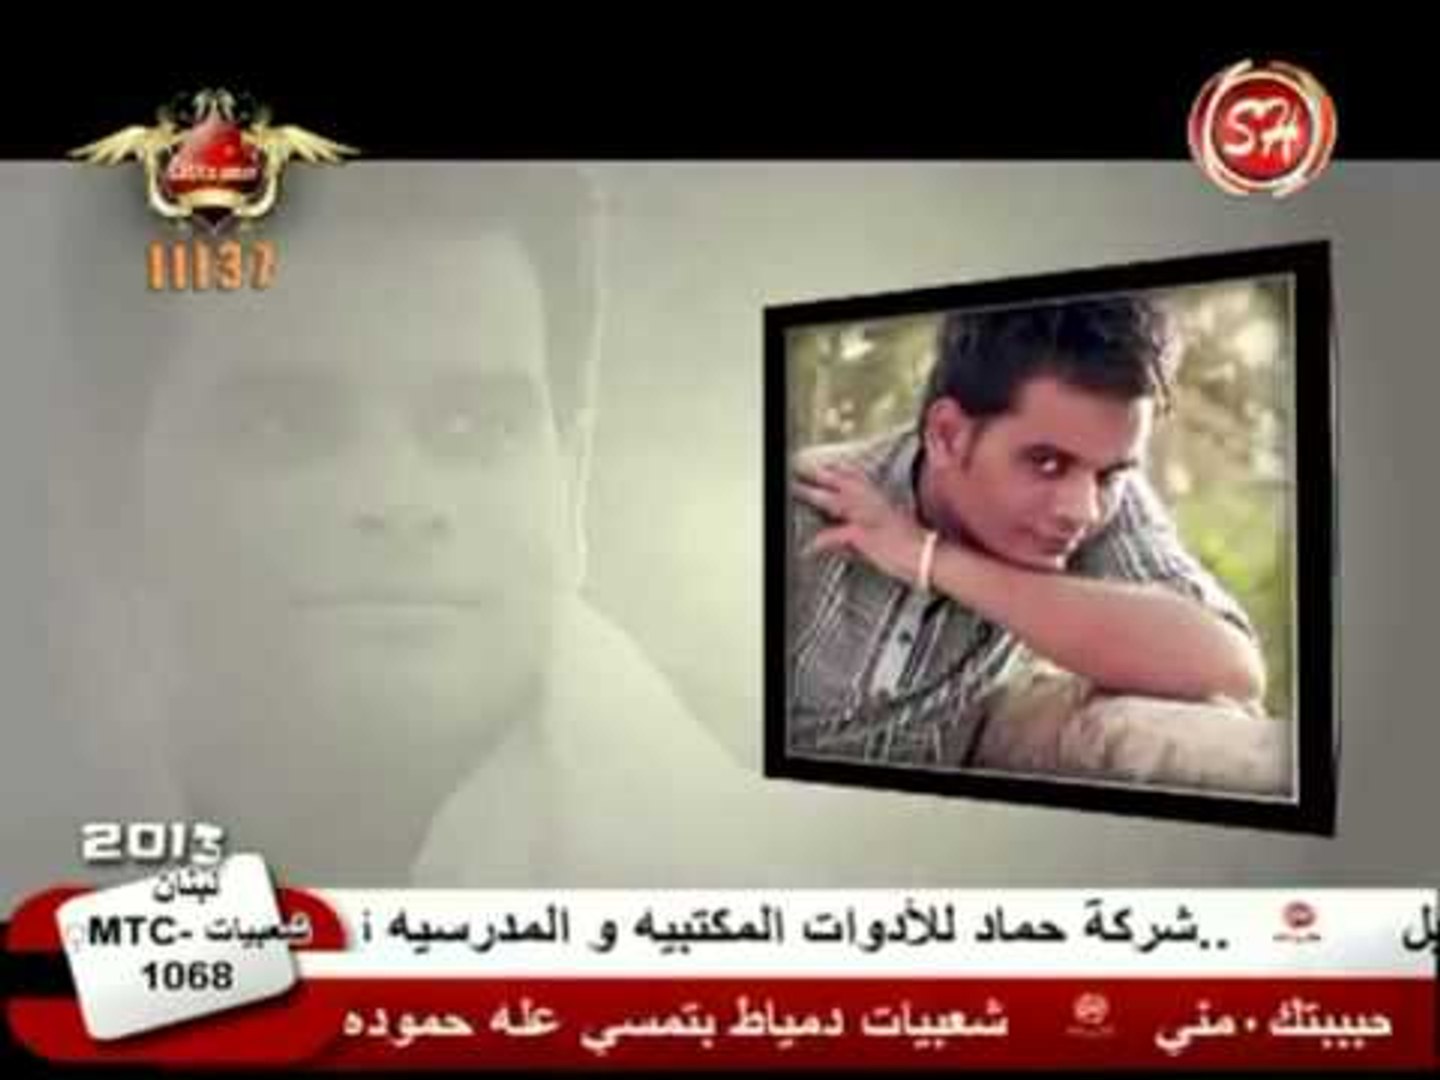 النجم على فاروق وبرمو البوم جبت اخرى على قناه شعبيات Ali Farouk Gebt AKhry  - video Dailymotion